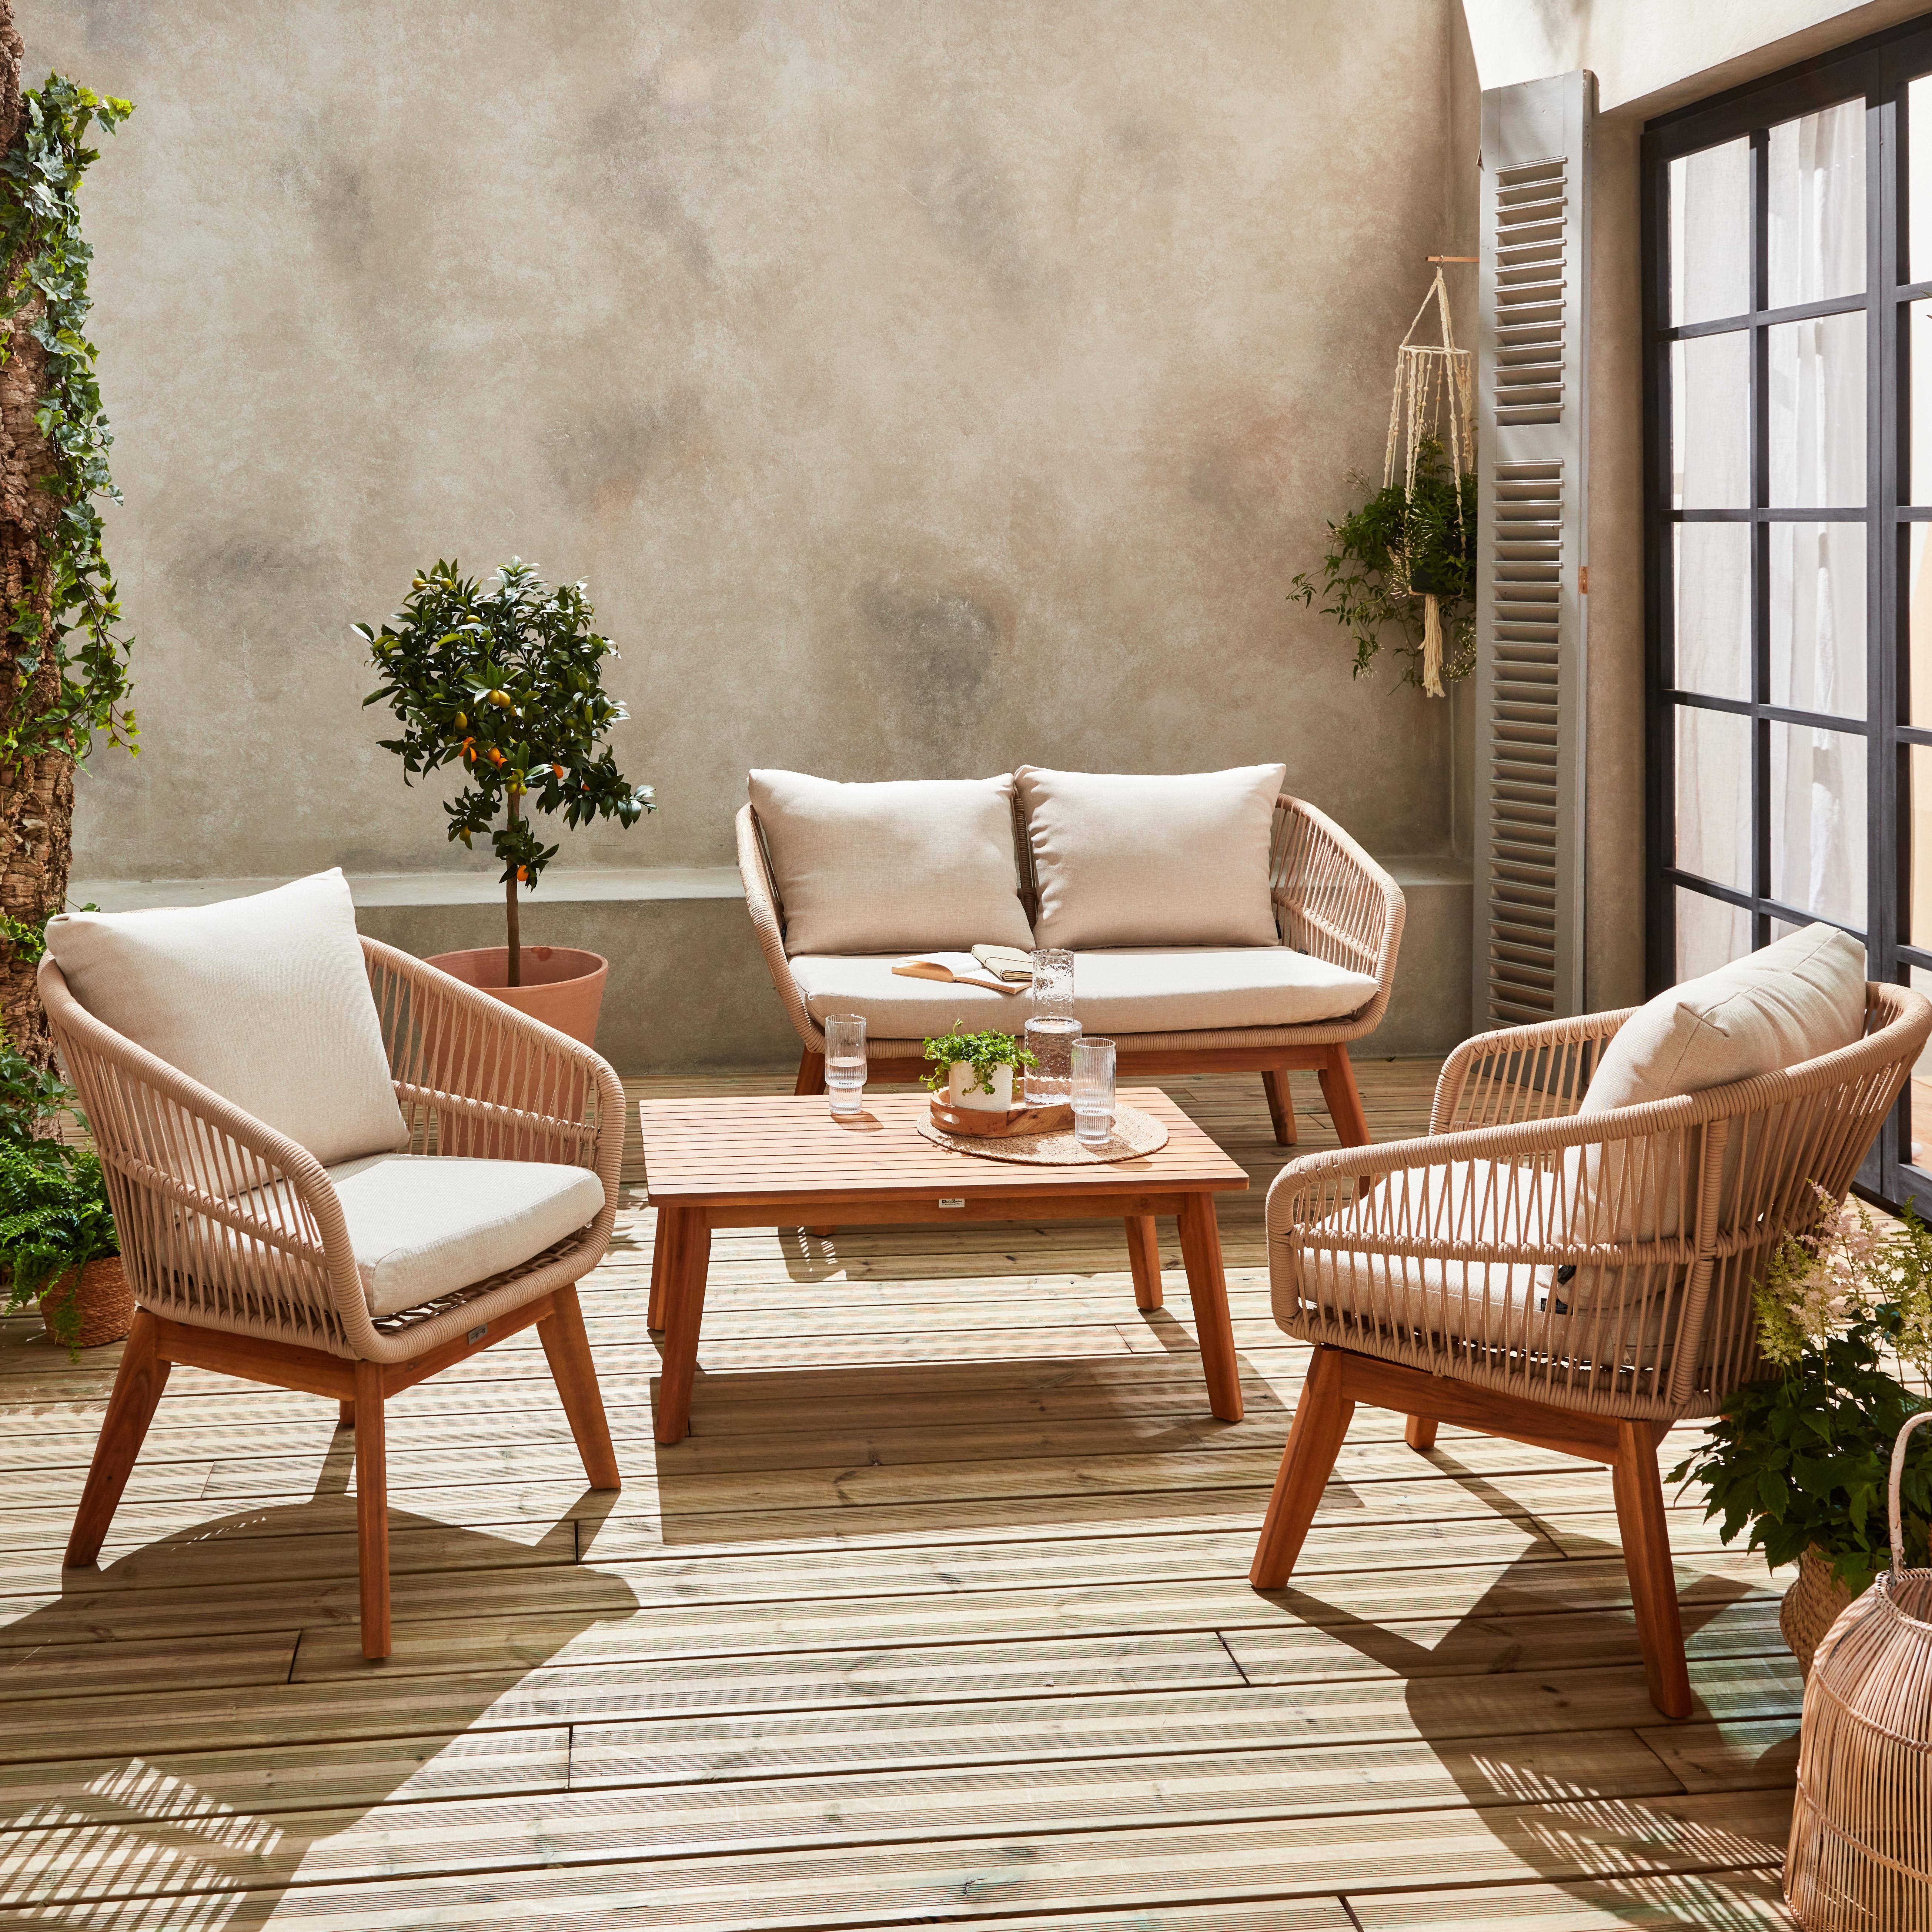 Gartengarnitur 4 Sitze - ROSARIO - aus geflochtenen Seilen, Holz und Aluminium, grau / beige Kissen Photo1